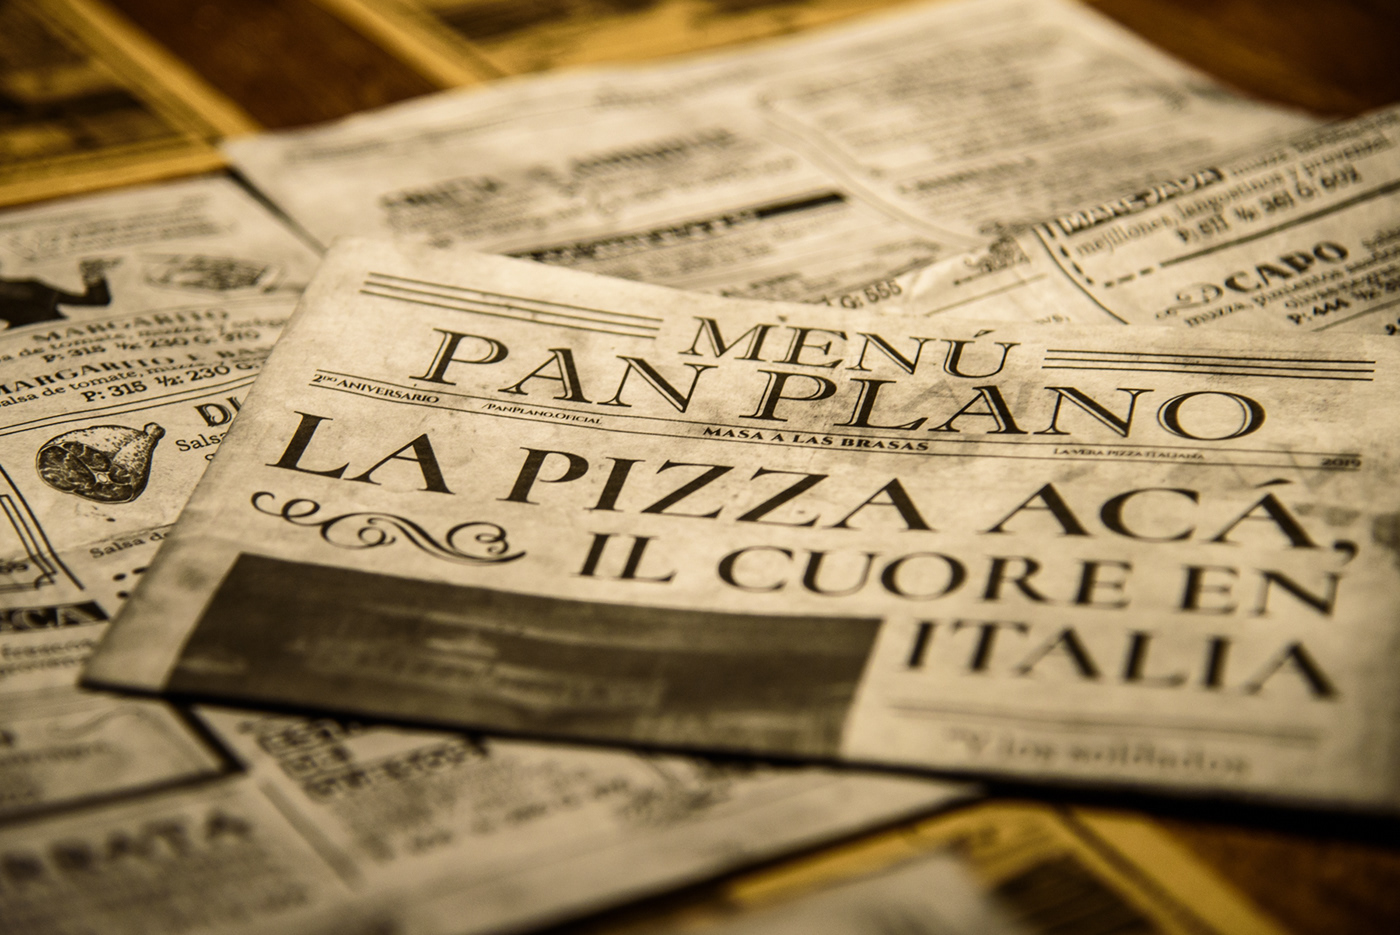 menu pizza menu Pizza vintage panplano